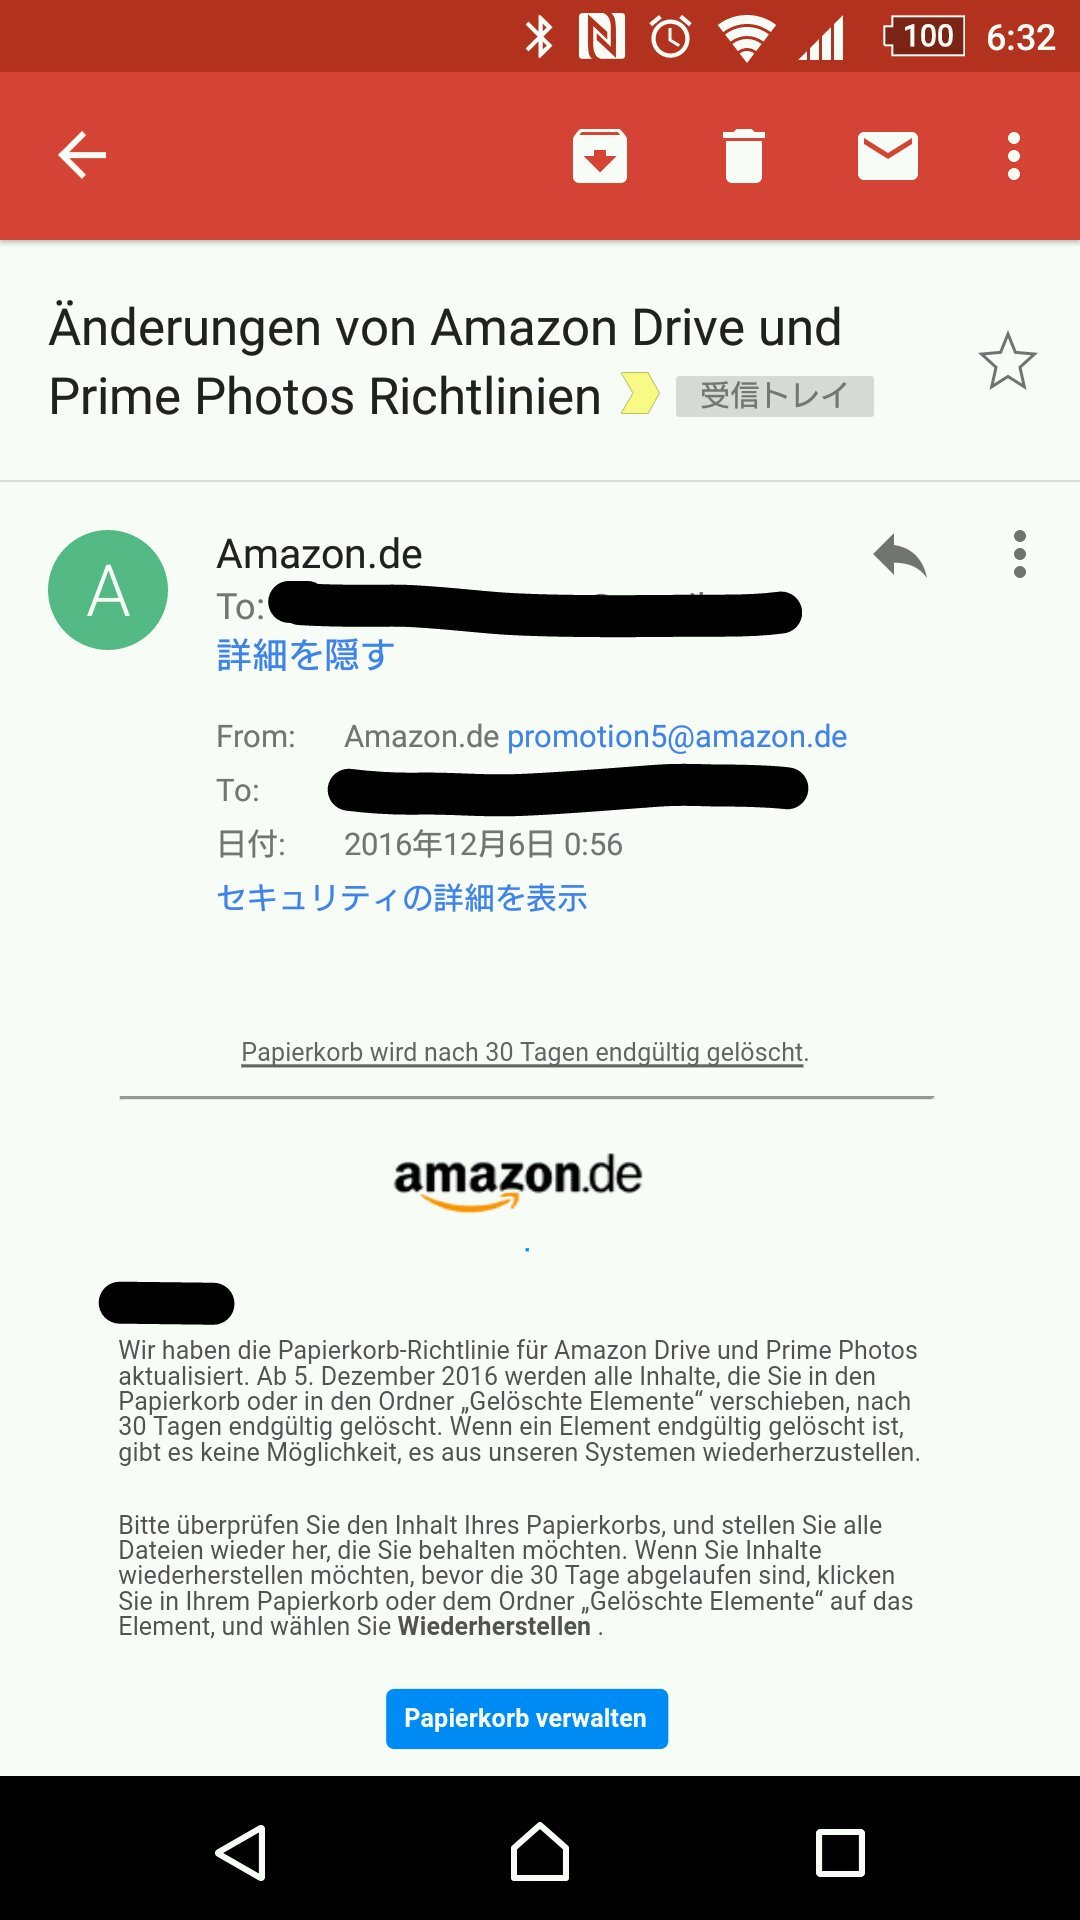 今江竜紀 Imae Tatsuki 夜中に Amazon De からメールが届いていたのですけれど 何故にドイツのamazon からドライブとプライムフォトの規約改正の通知が来るんですかね あ ドイツ語が読めるわけではなく 日本のamazonからも数日前に同様のメールが来ていた